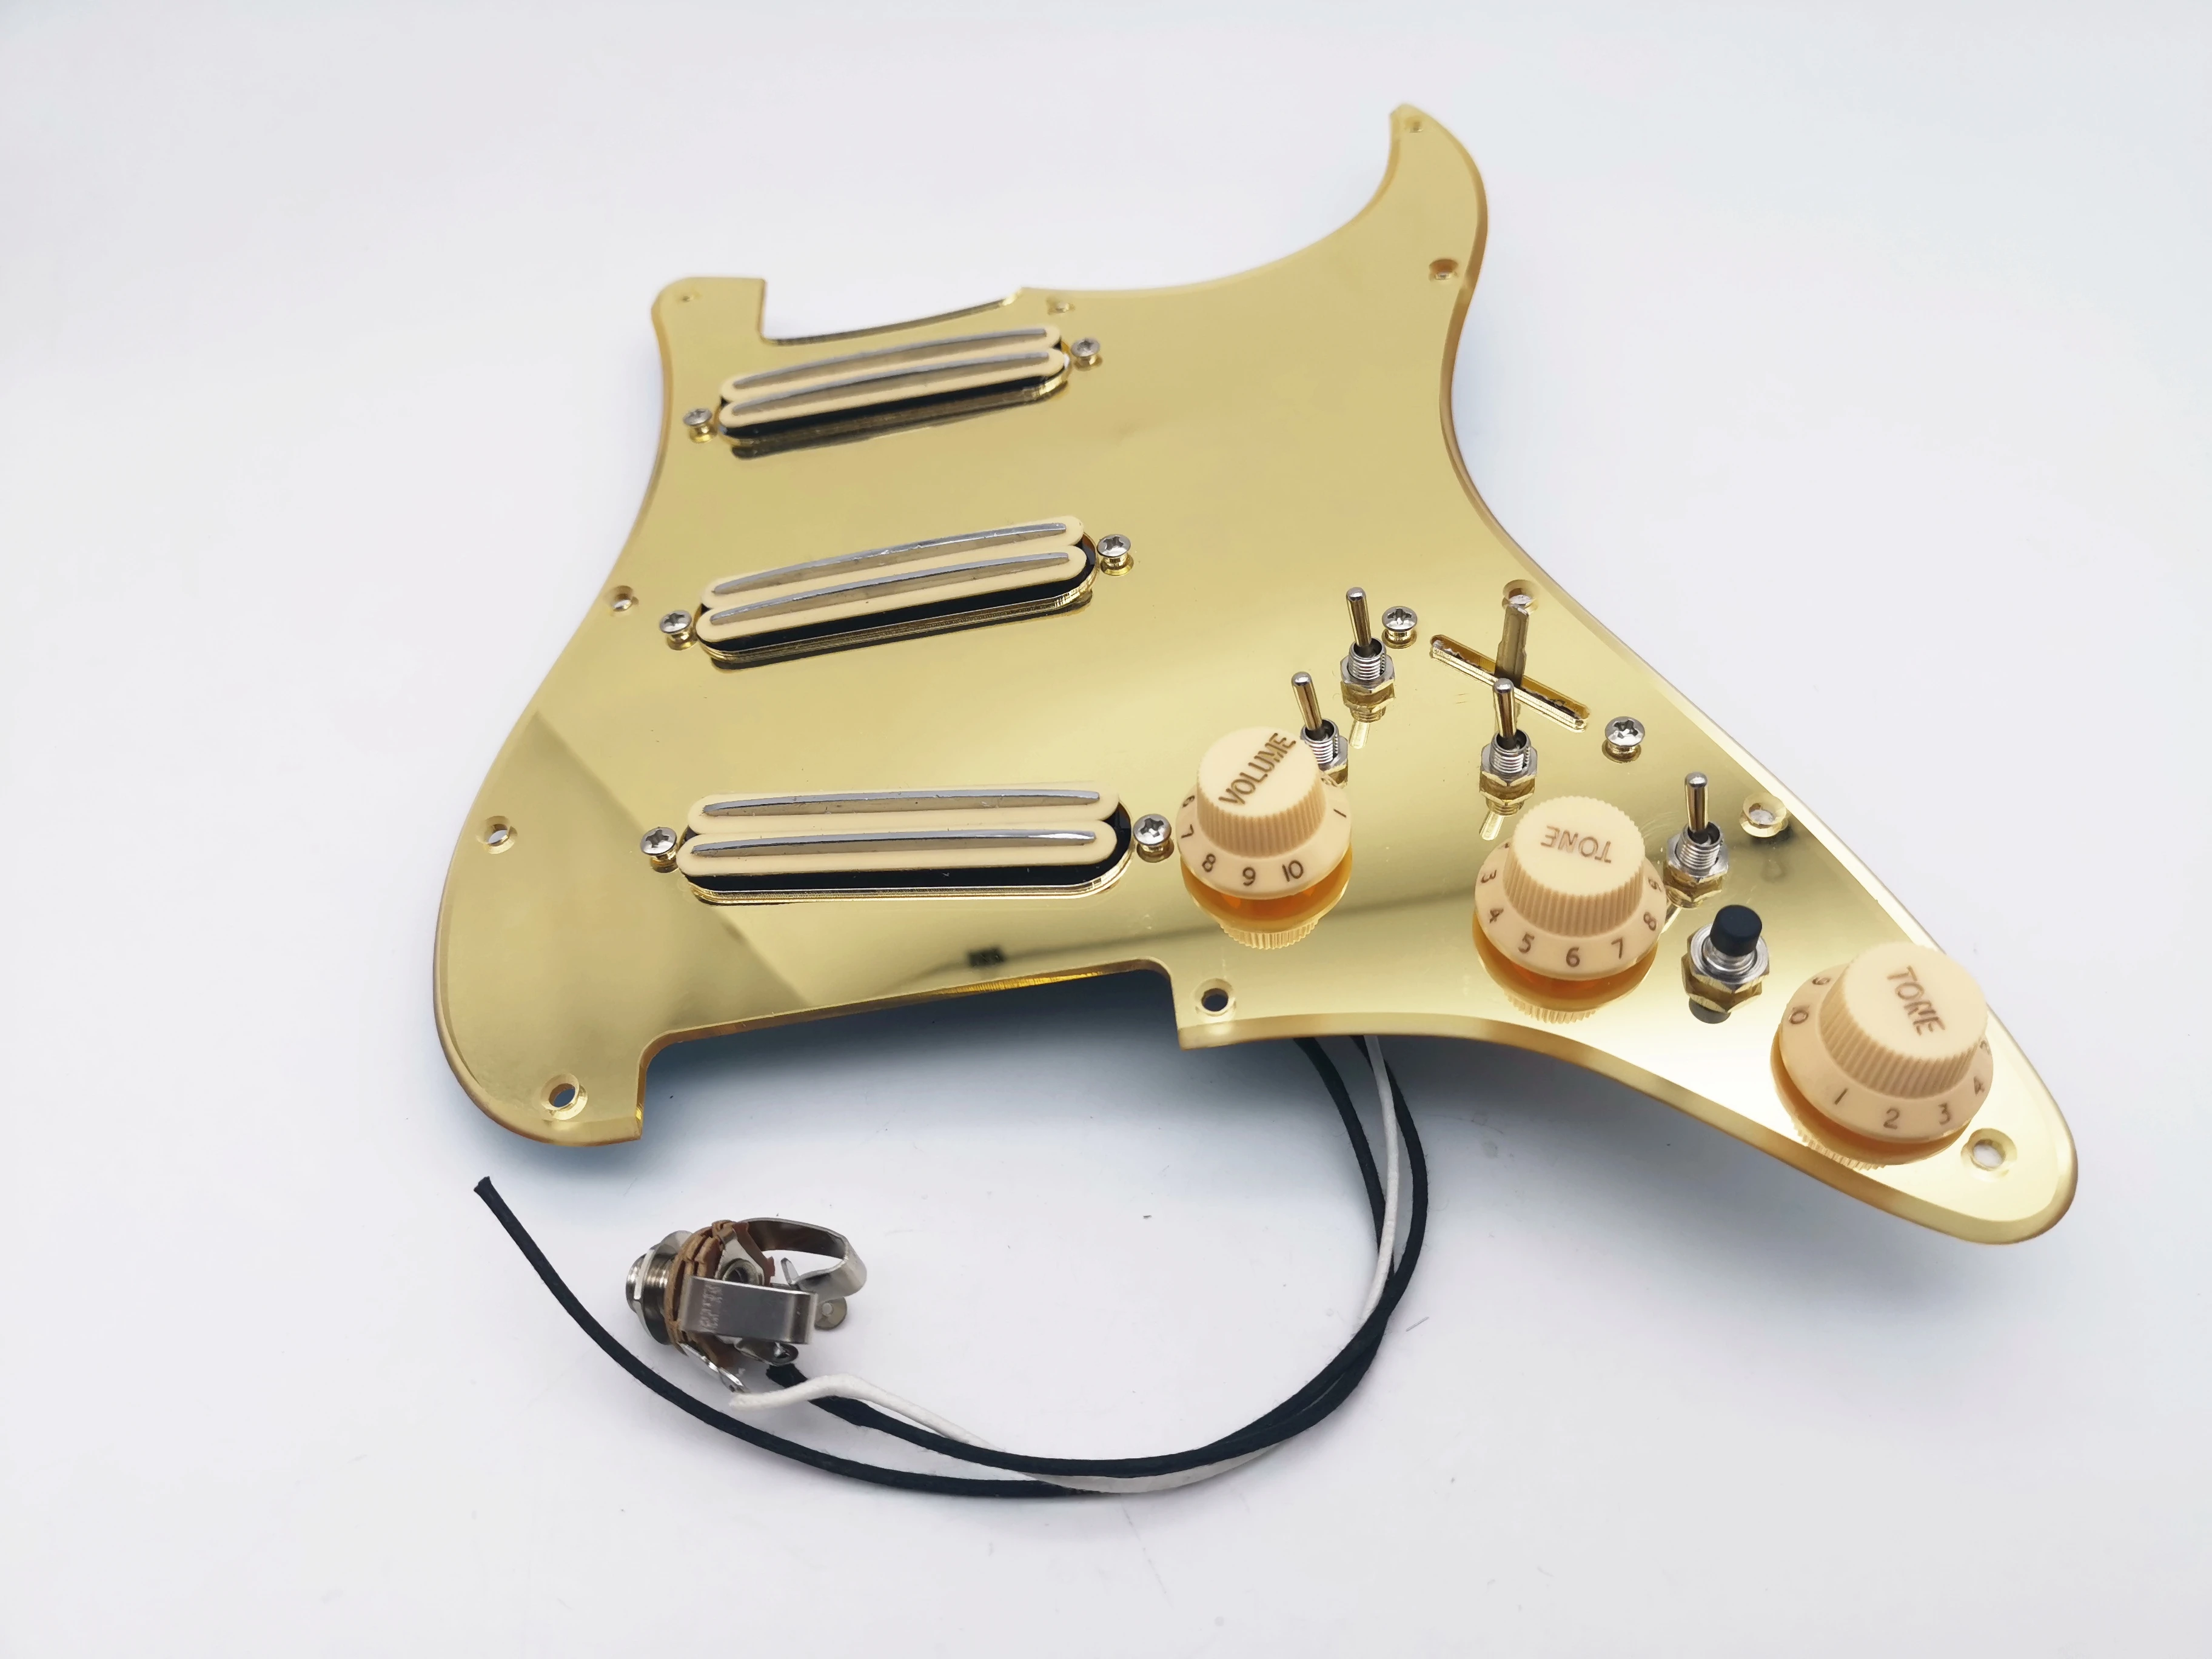 エレクトリックギター用クローズドゴールドギターピックアップ,ハムバッカー,イエロー,ダブルトラック,スギター配線,バーストに適合|ギター パーツ   アクセサリー| AliExpress